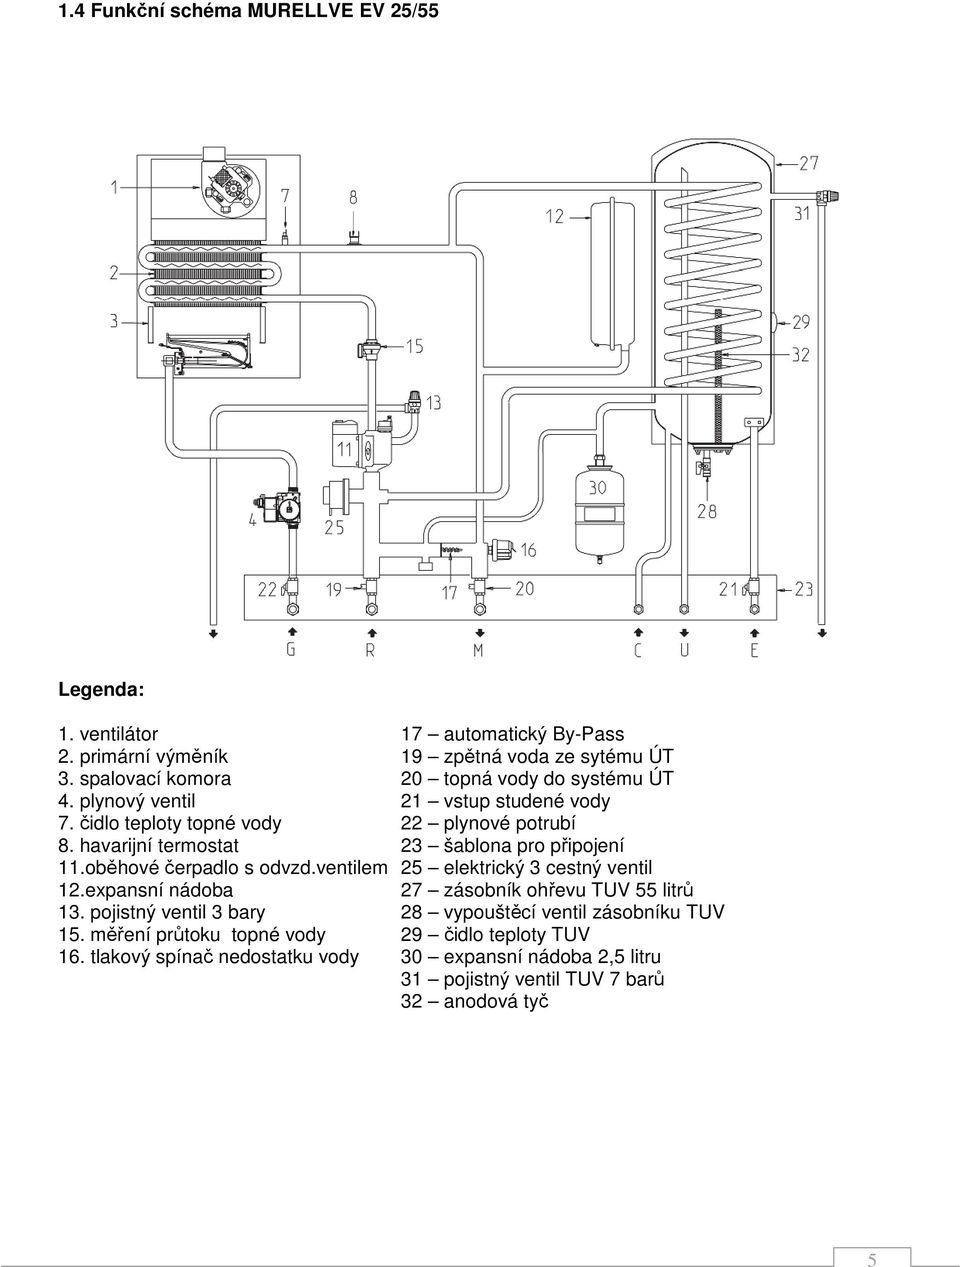 havarijní termostat 23 šablona pro připojení 11.oběhové čerpadlo s odvzd.ventilem 25 elektrický 3 cestný ventil 12.